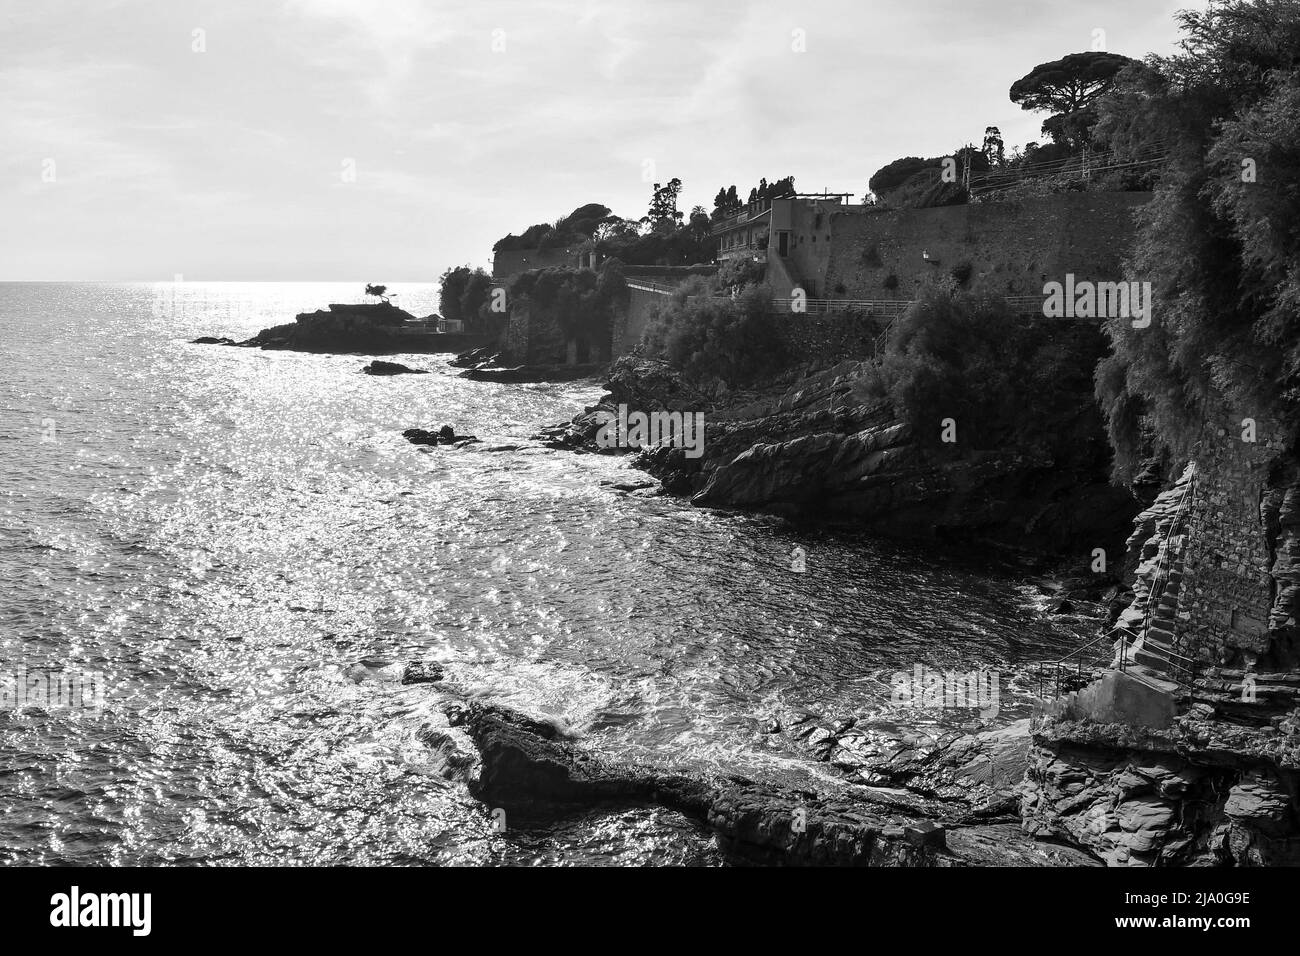 Vue panoramique noir et blanc depuis la promenade Anita Garibaldi, sentier populaire surplombant le golfe du Paradis, Nervi, Gênes, Ligurie, Italie Banque D'Images